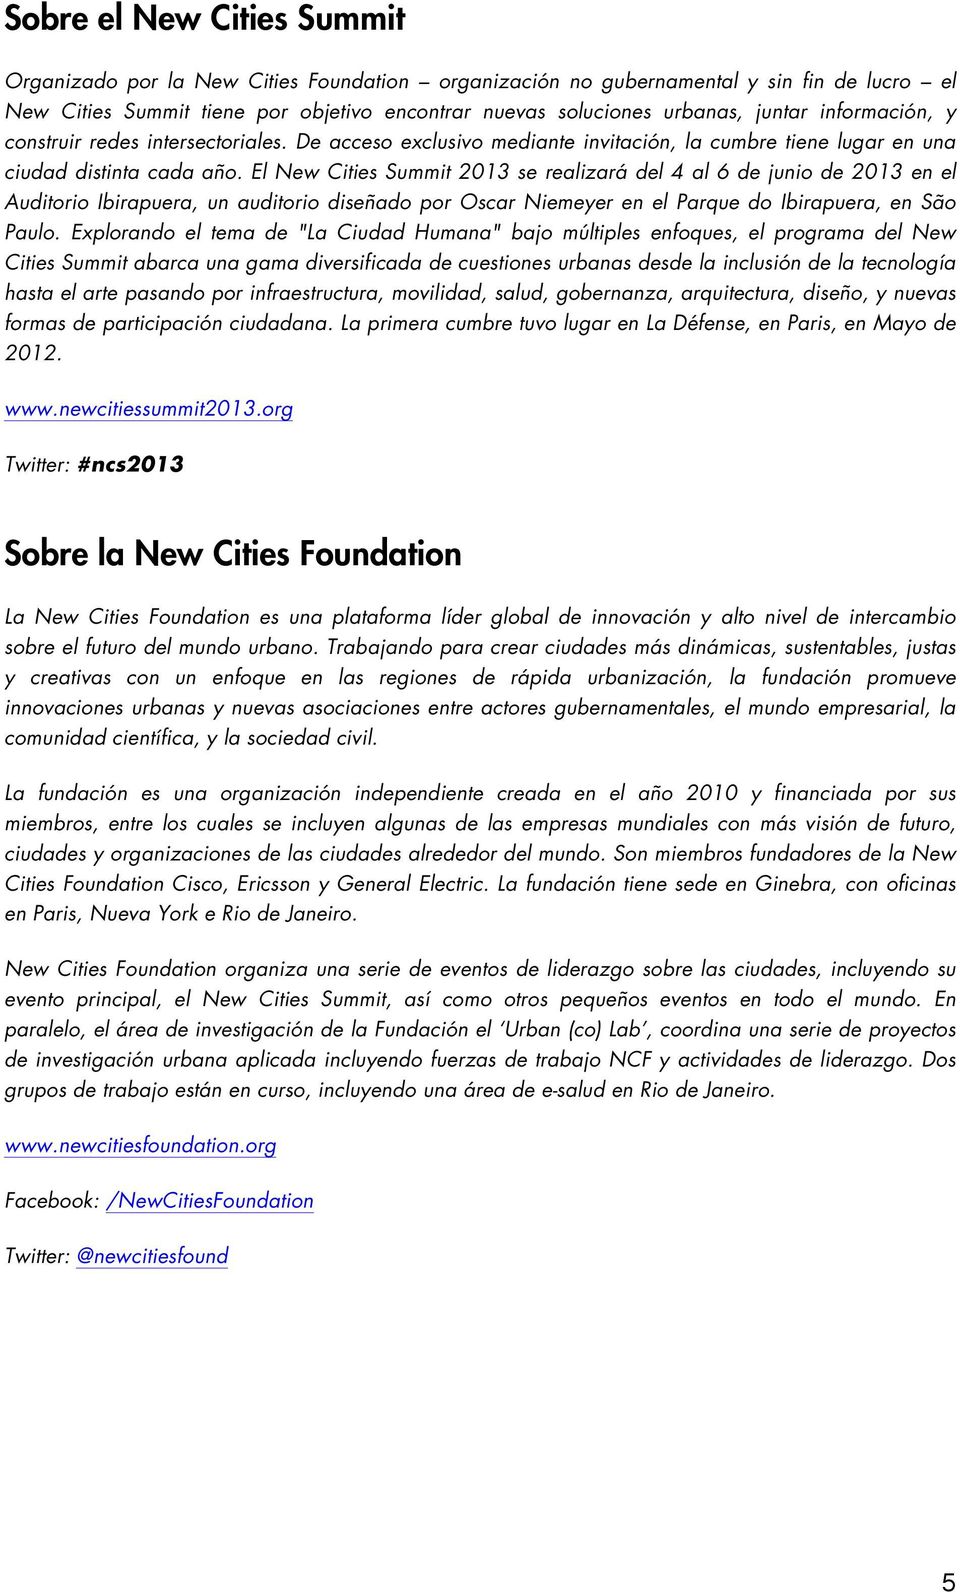 El New Cities Summit 2013 se realizará del 4 al 6 de junio de 2013 en el Auditorio Ibirapuera, un auditorio diseñado por Oscar Niemeyer en el Parque do Ibirapuera, en São Paulo.